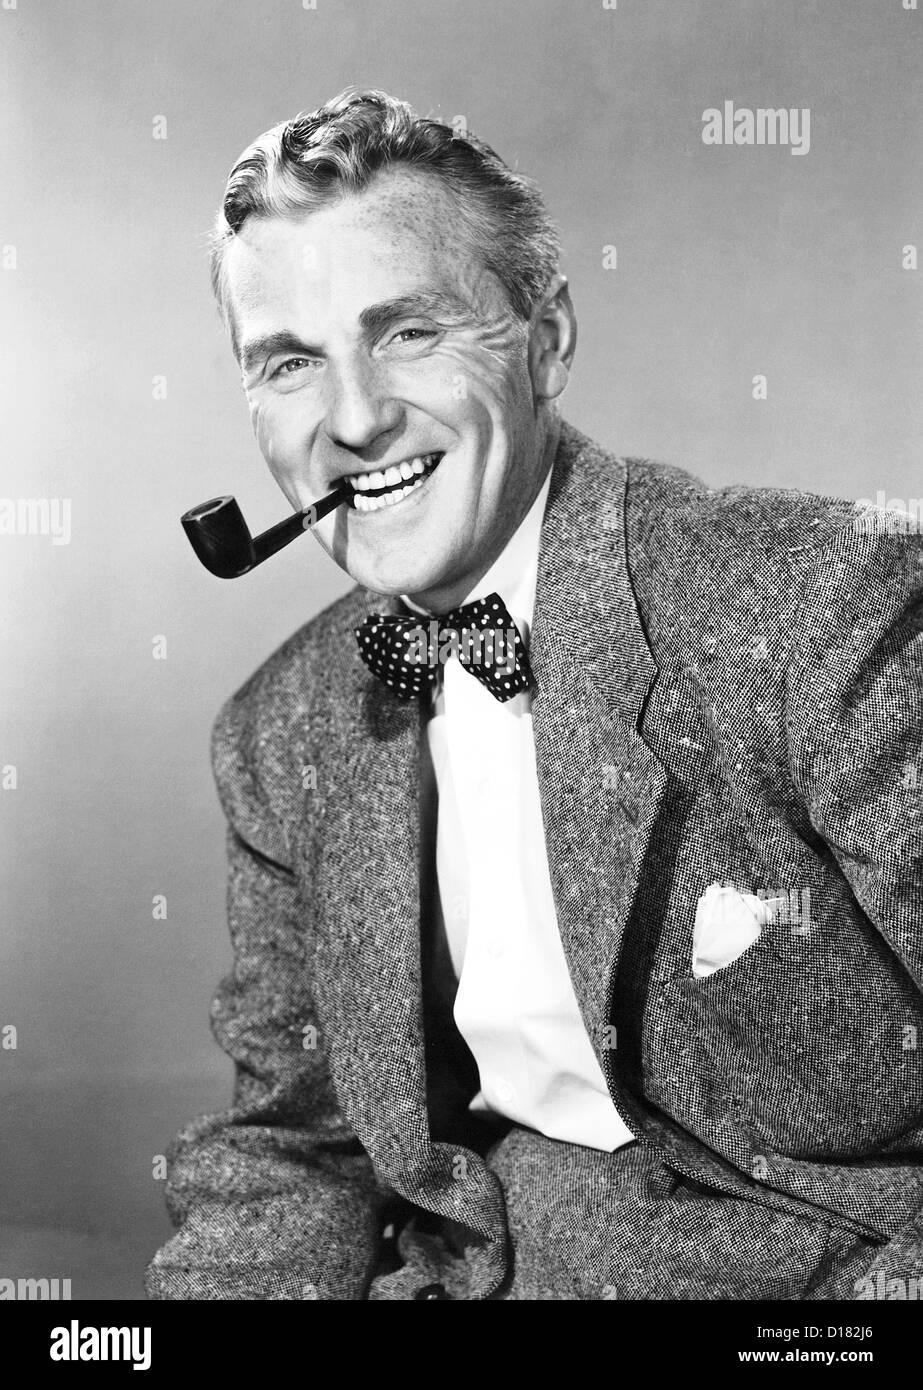 Mature man with bow tie smoking pipe Stock Photo